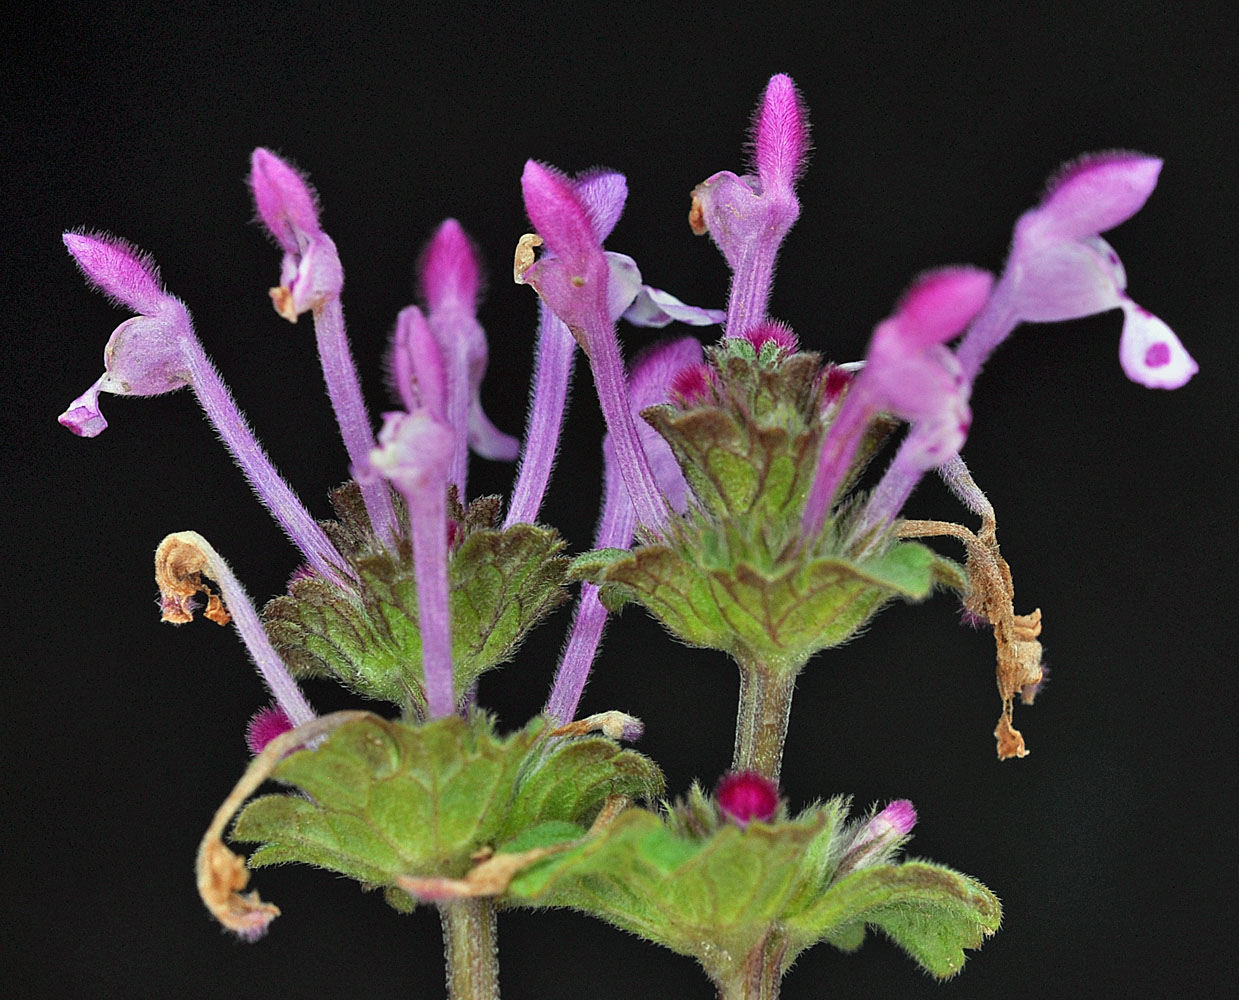 Flora of Eastern Washington Image: Lamium amplexicaule